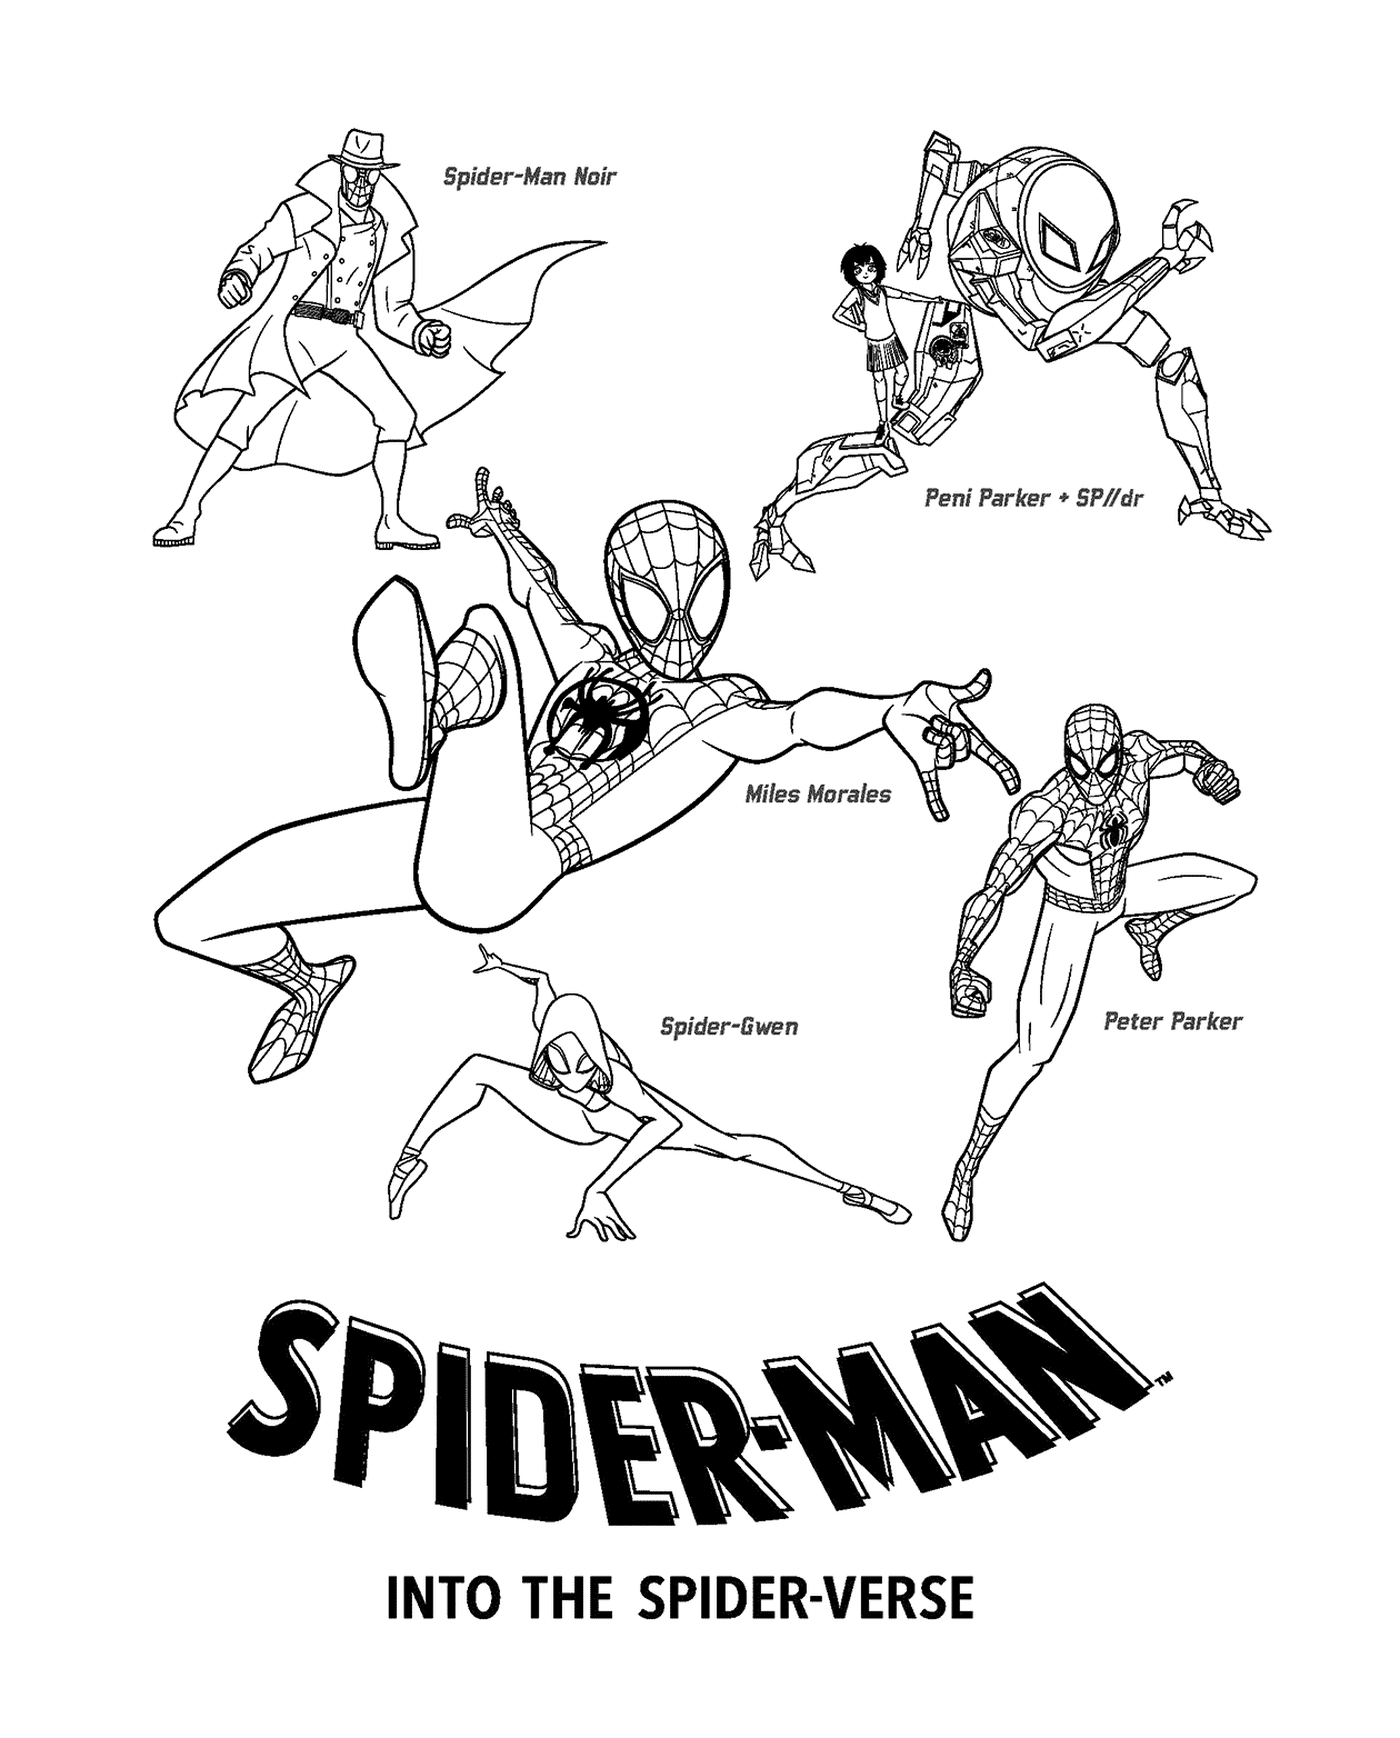  Spinnen-Mann-Gruppe 